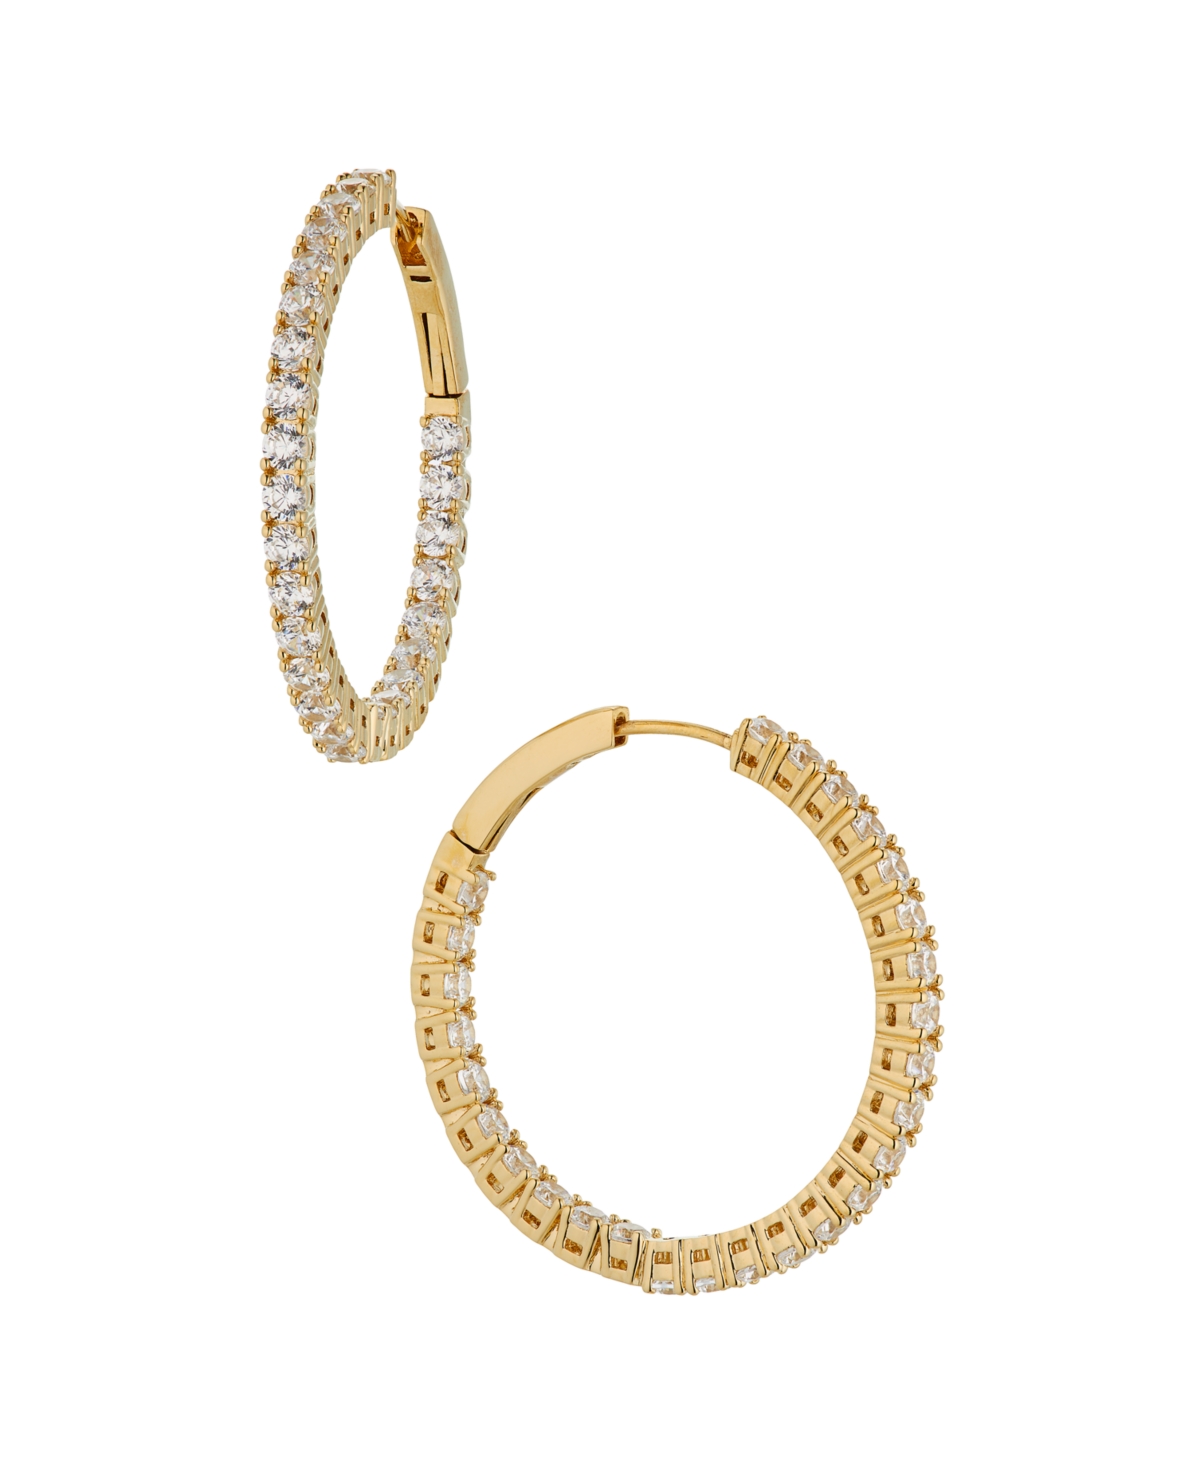 Eliot Danori Cubic Zirconia Medium Hoop Earrings, Created For Macy's In Gold